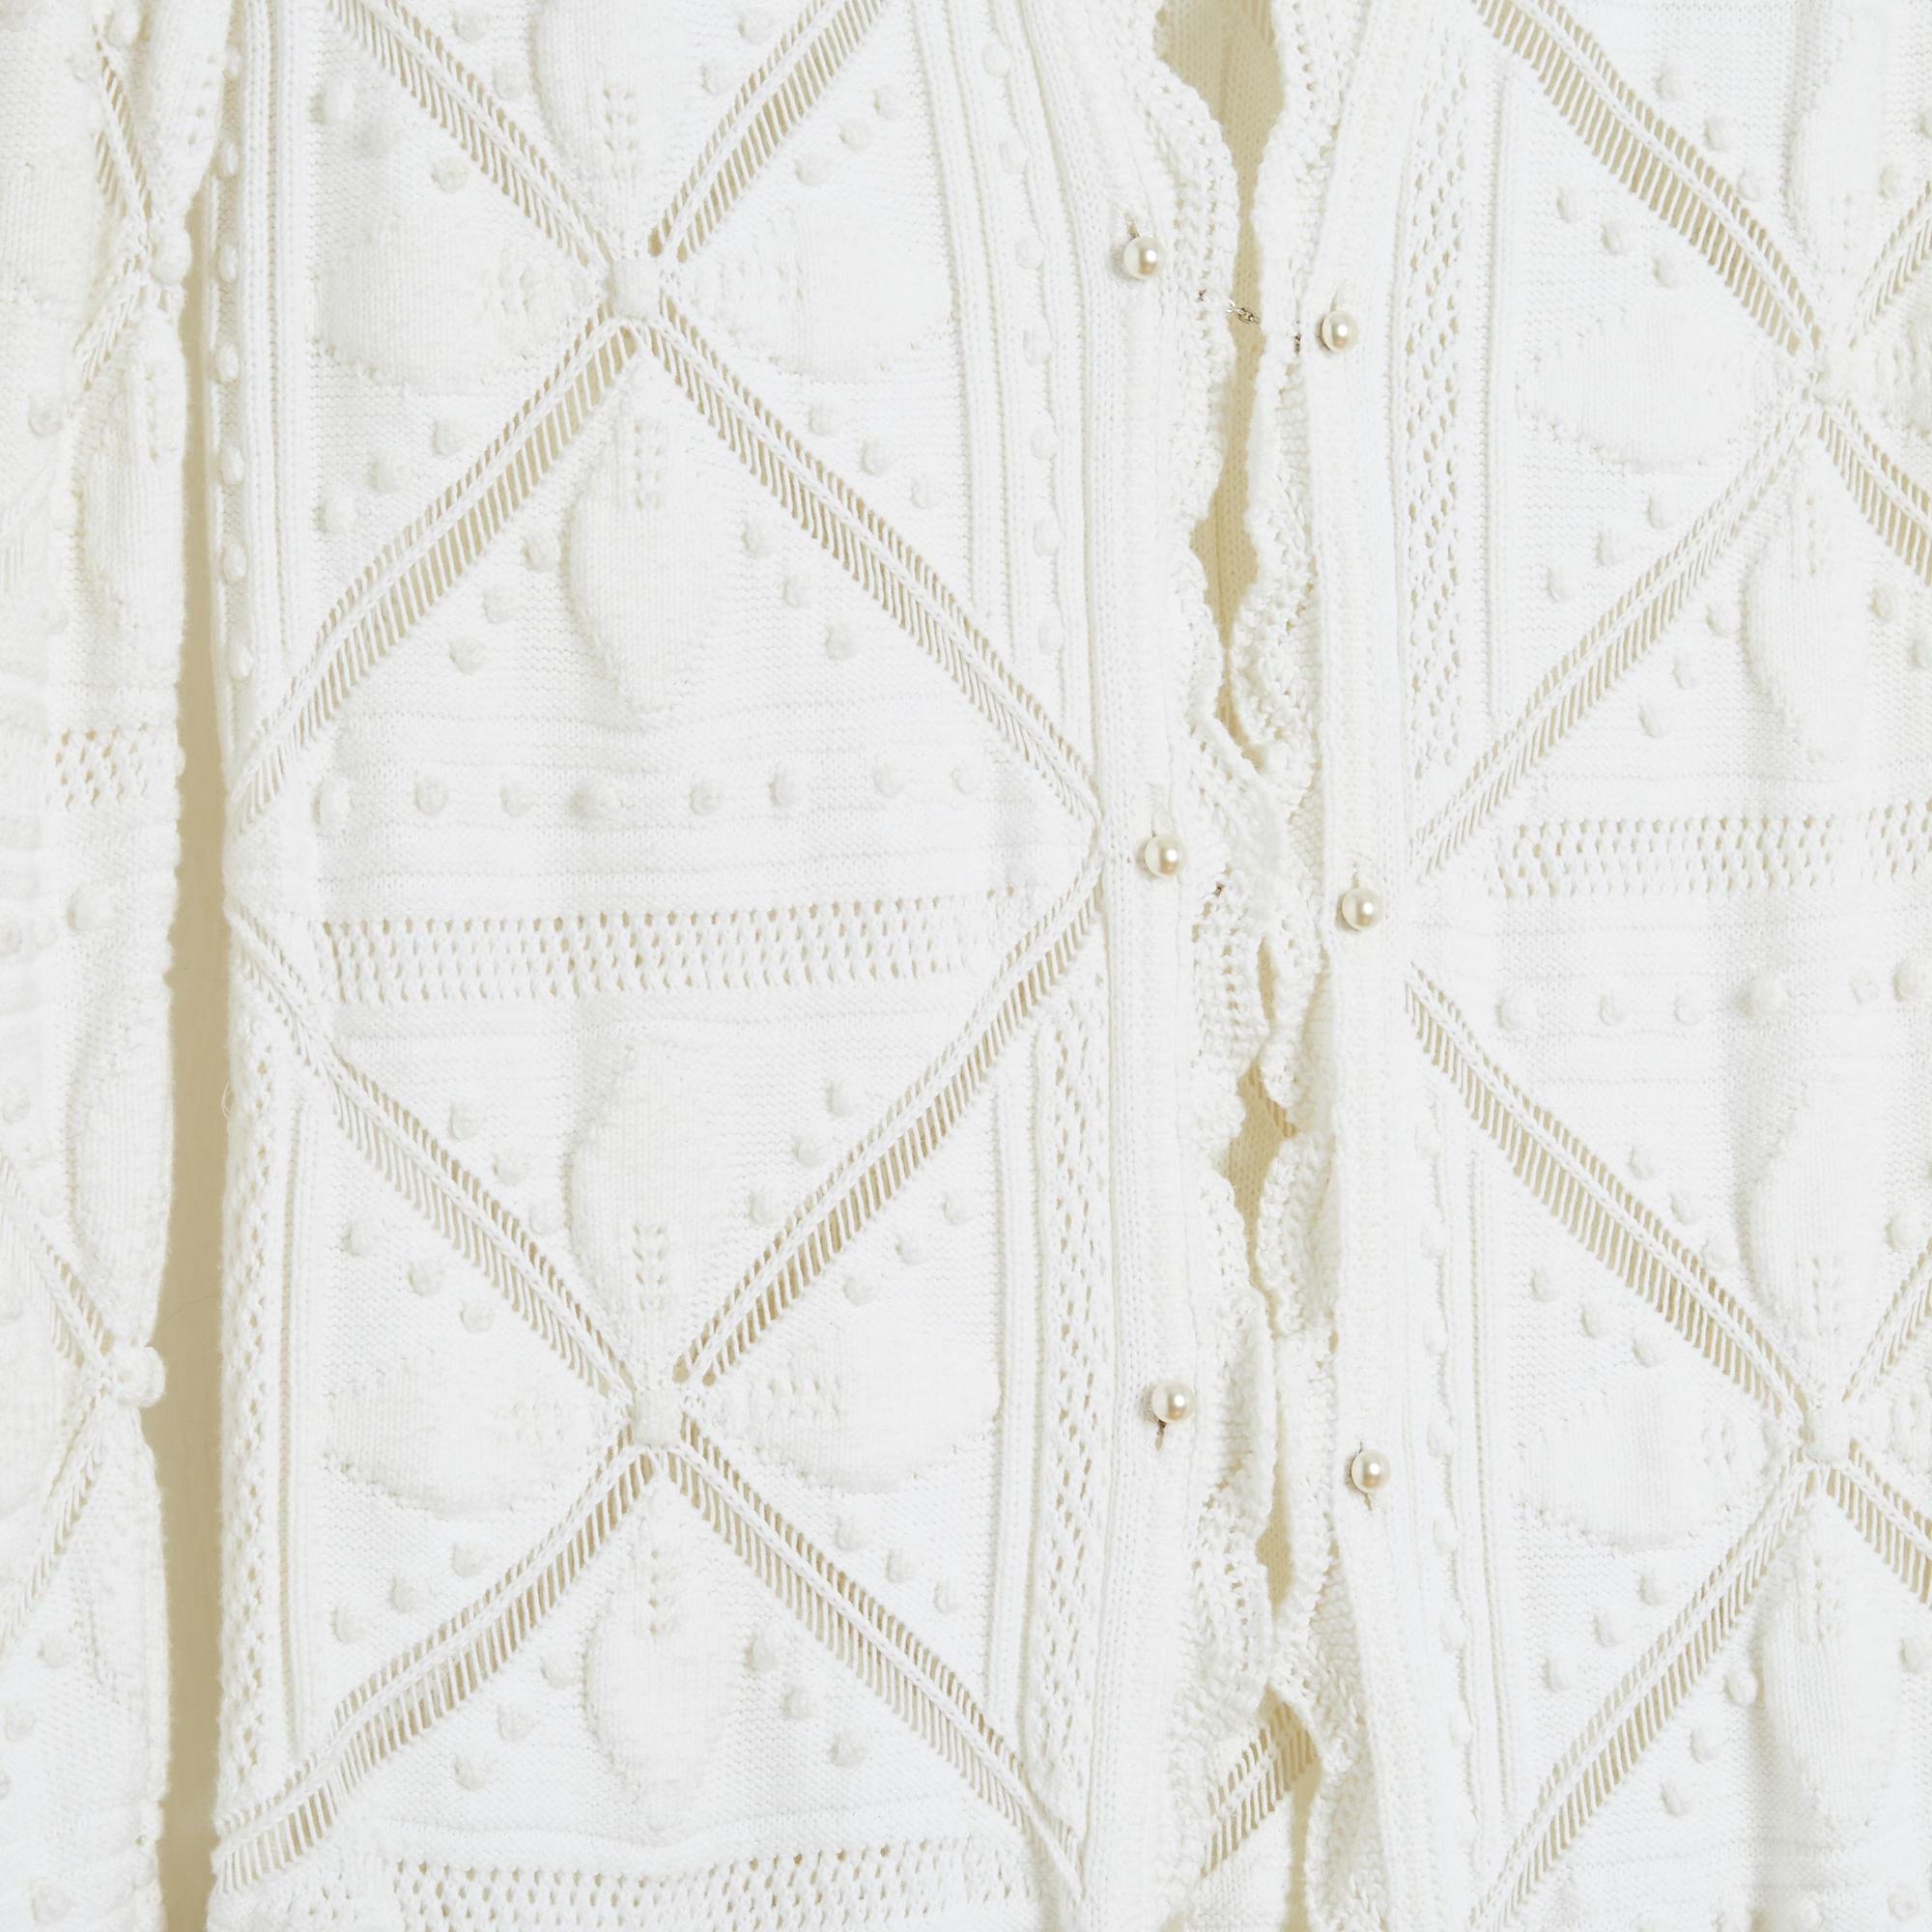 Chanel long jacket SS 2004 collection cardigan en coton blanc tricoté avec des motifs géométriques et des bords volantés, fermé sur le devant par 3 barrettes ornées de perles fantaisie, non doublé. Taille 38FR soit US8 : taille 40 cm, poitrine 42